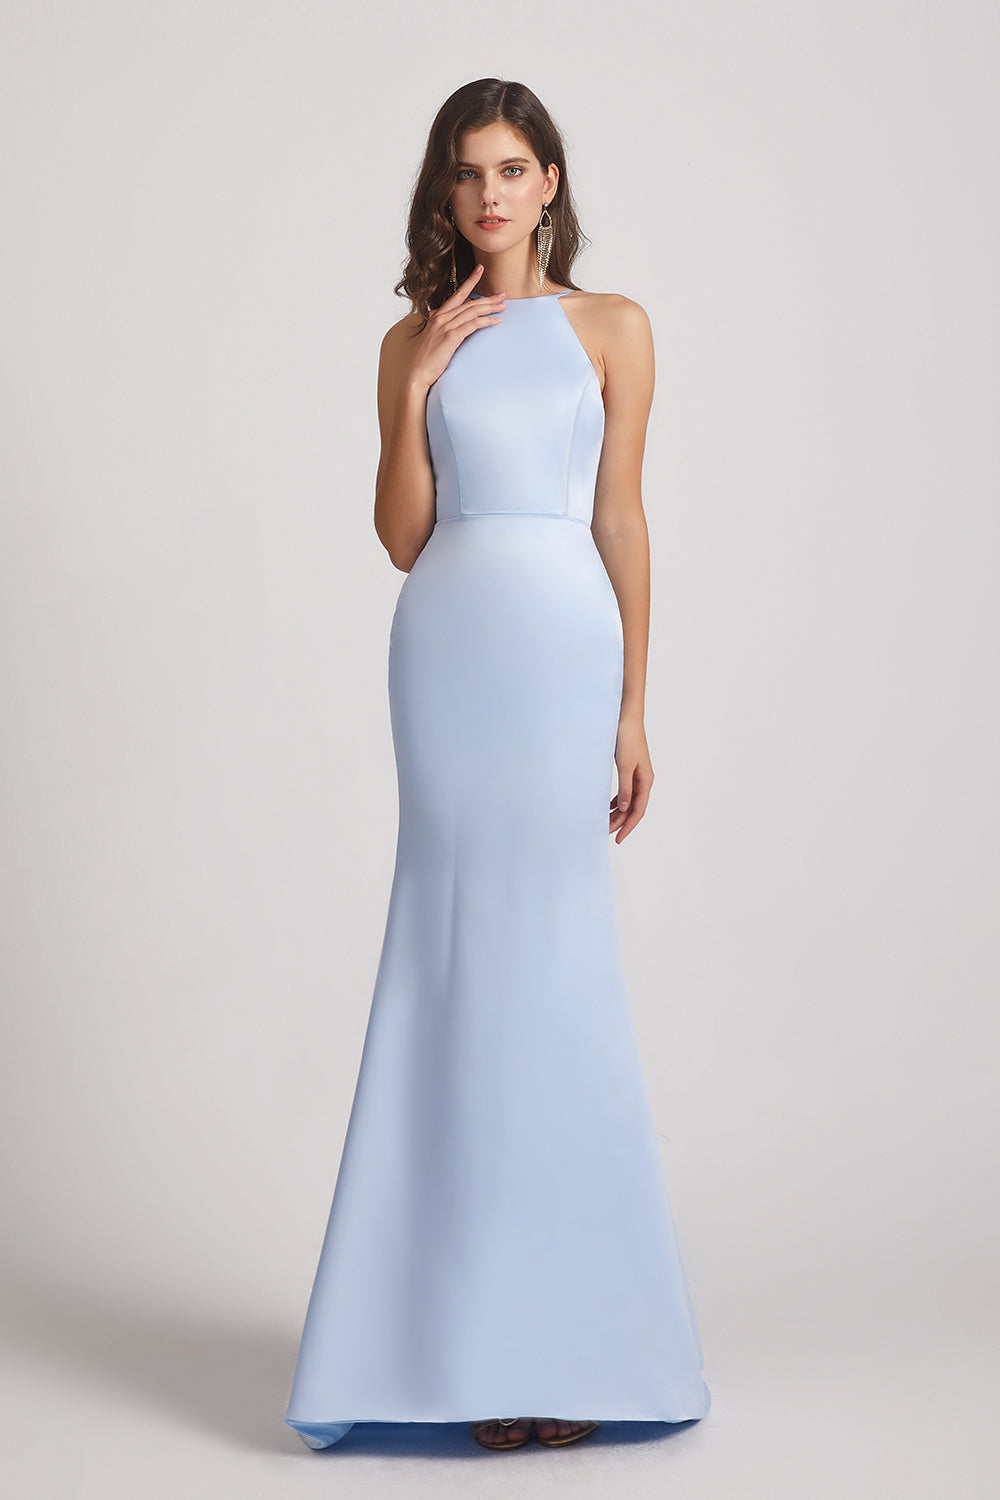 sheath sky blue bridesmaids dresses